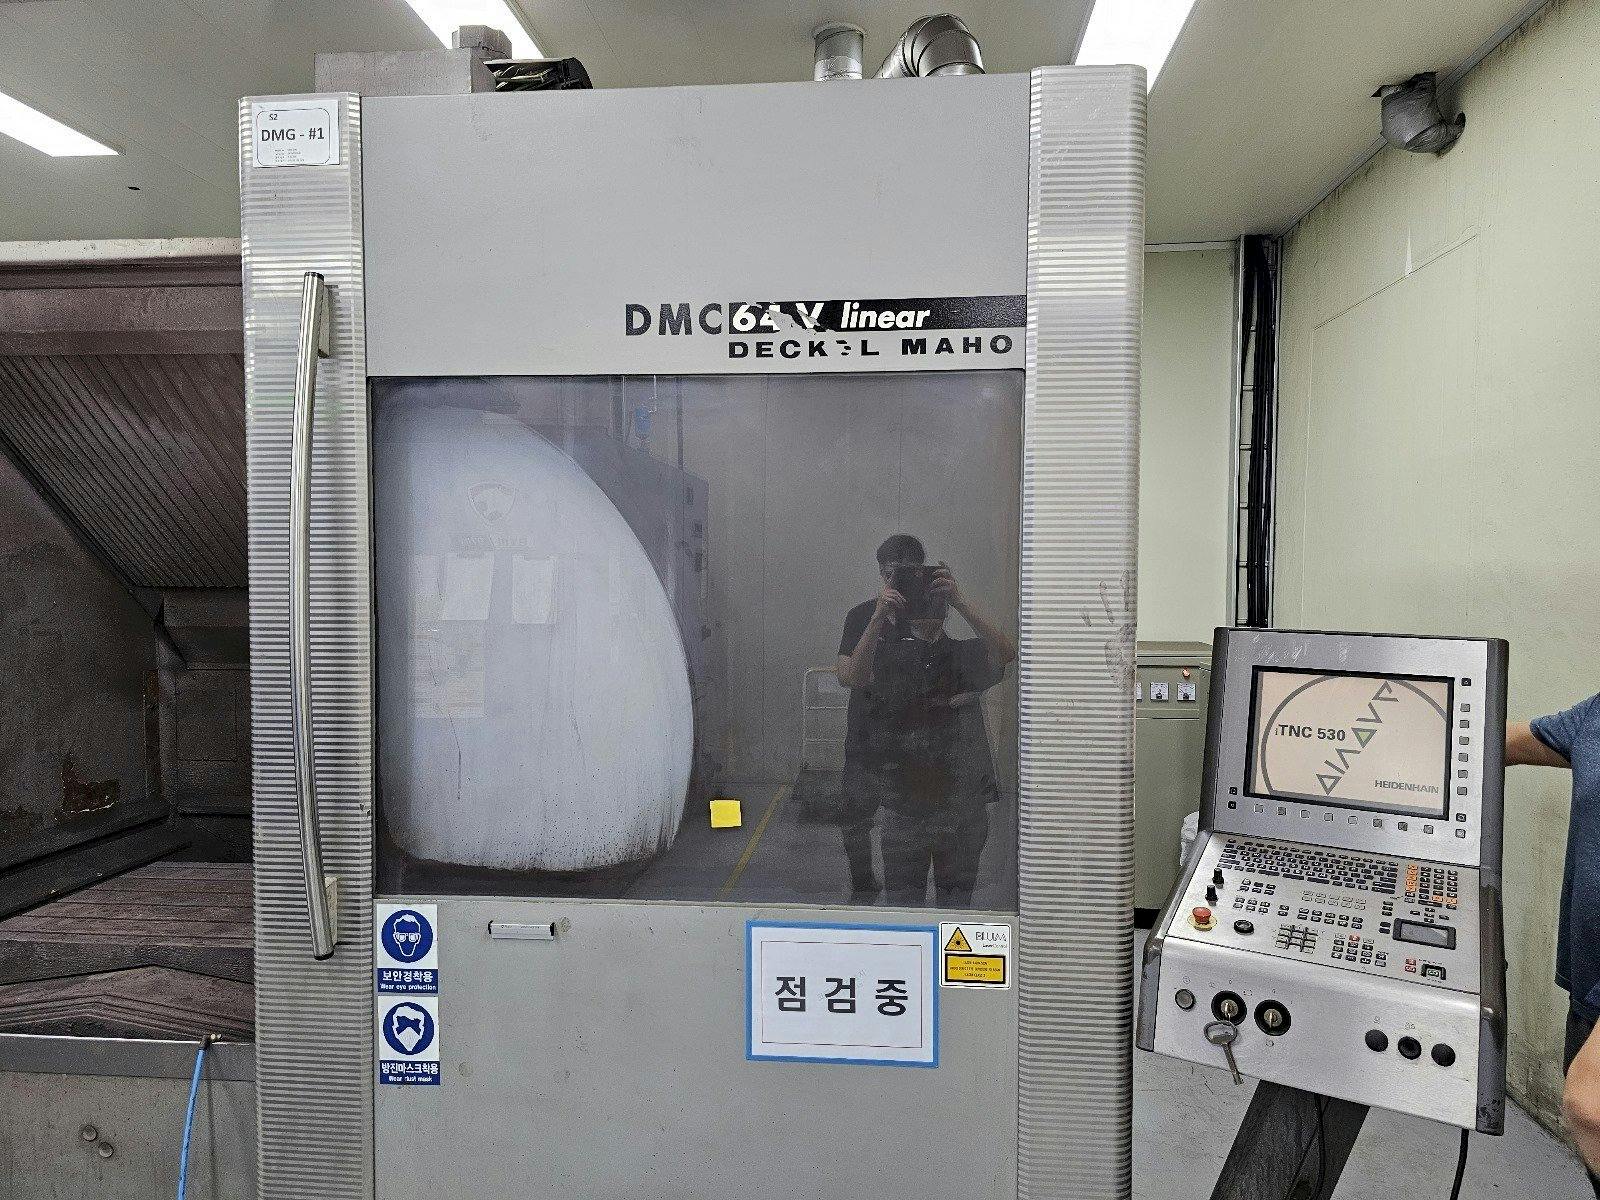 Widok z przodu maszyny DECKEL MAHO DMC 64V linear